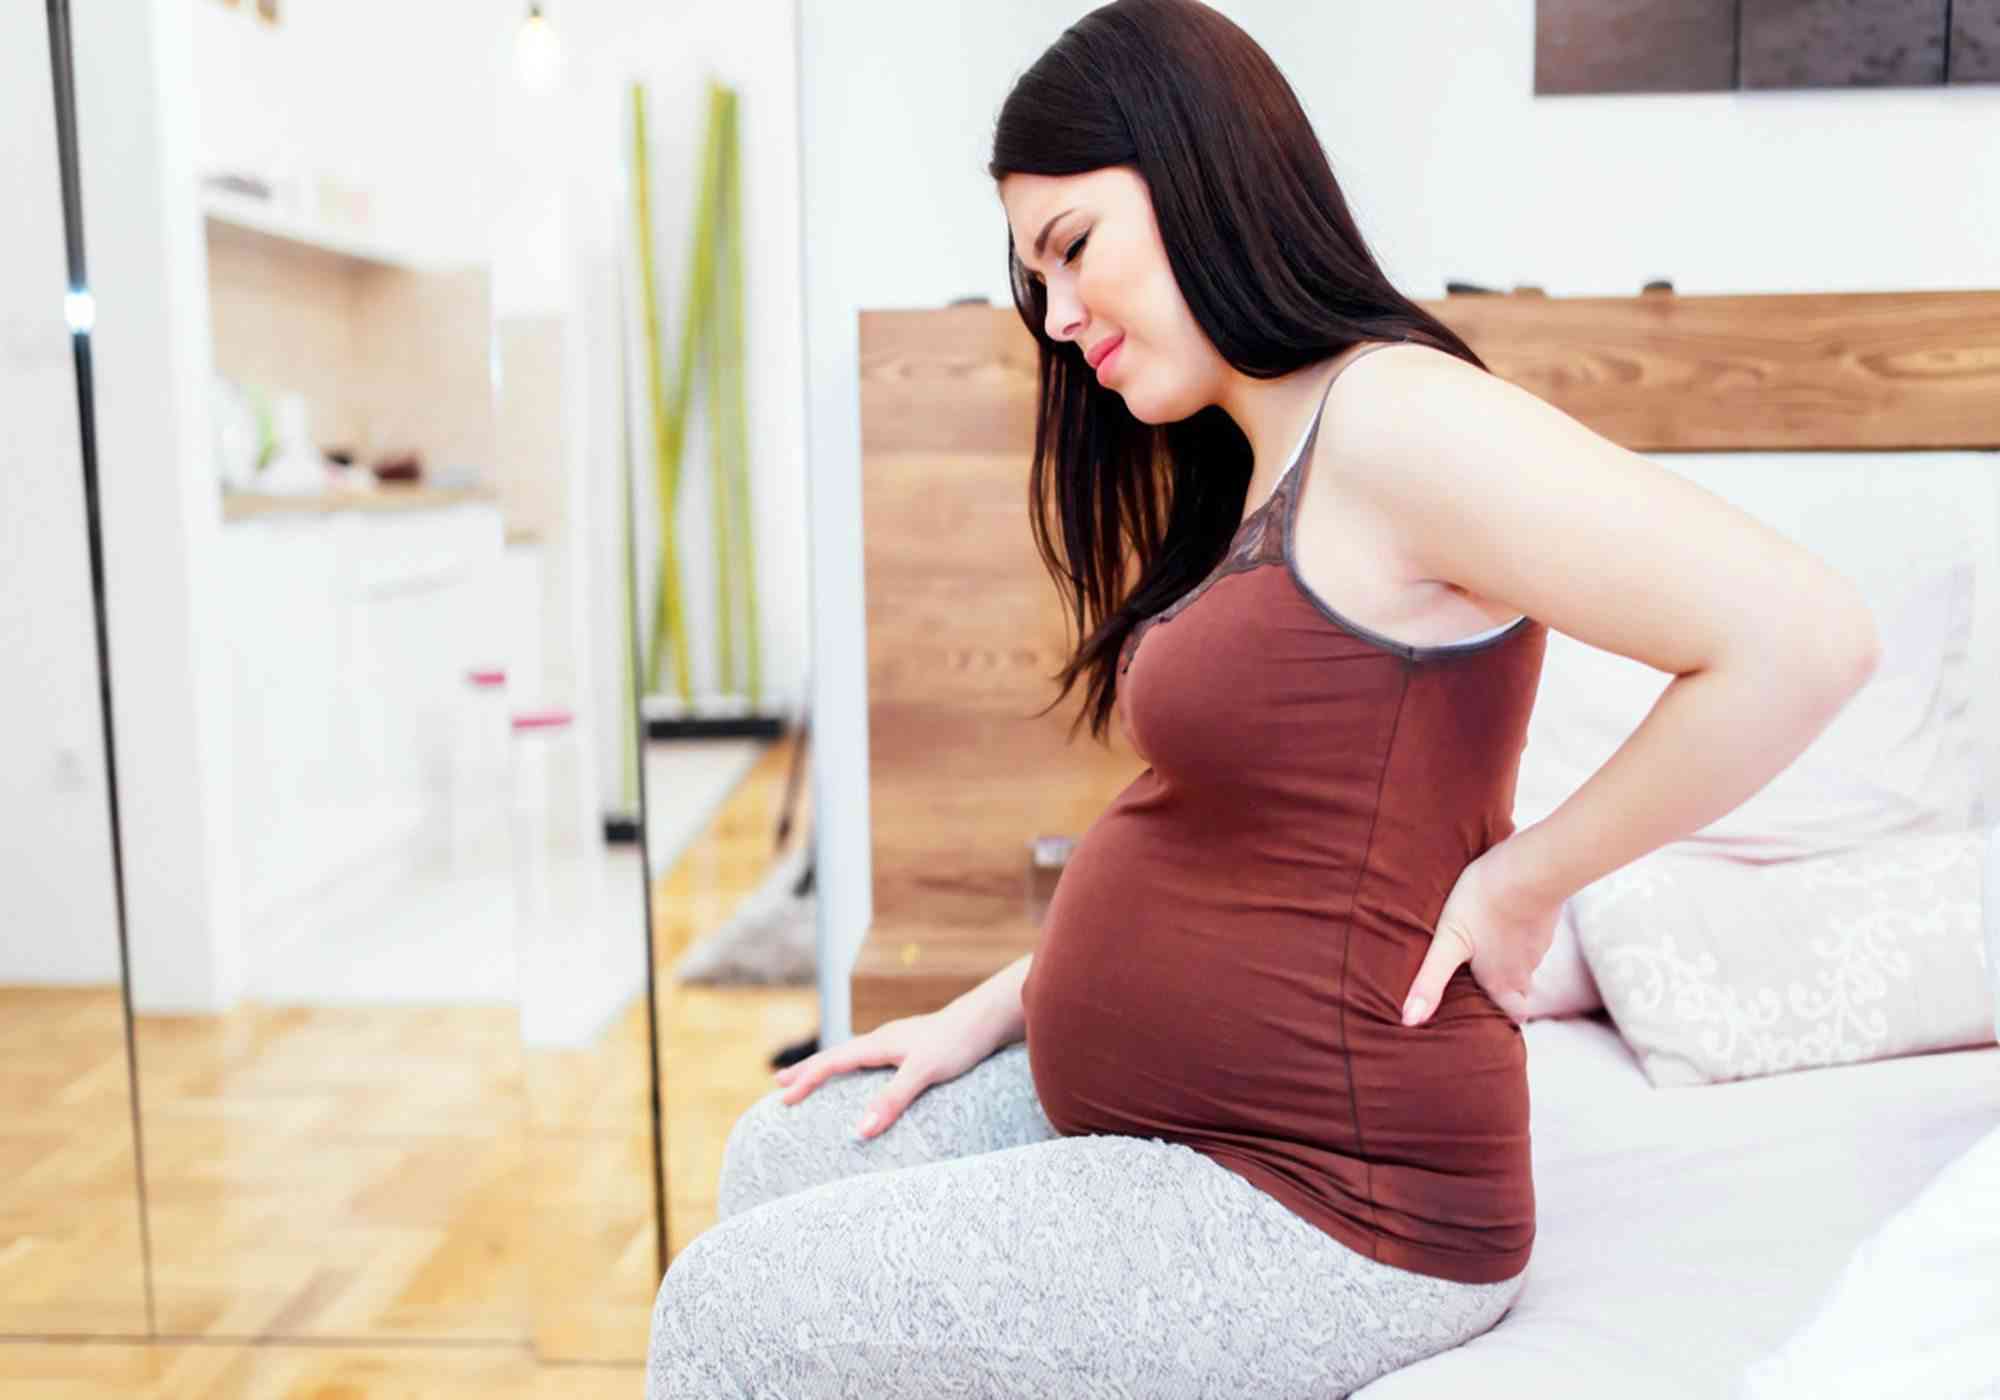 激素水平变化会导致孕期胯骨疼